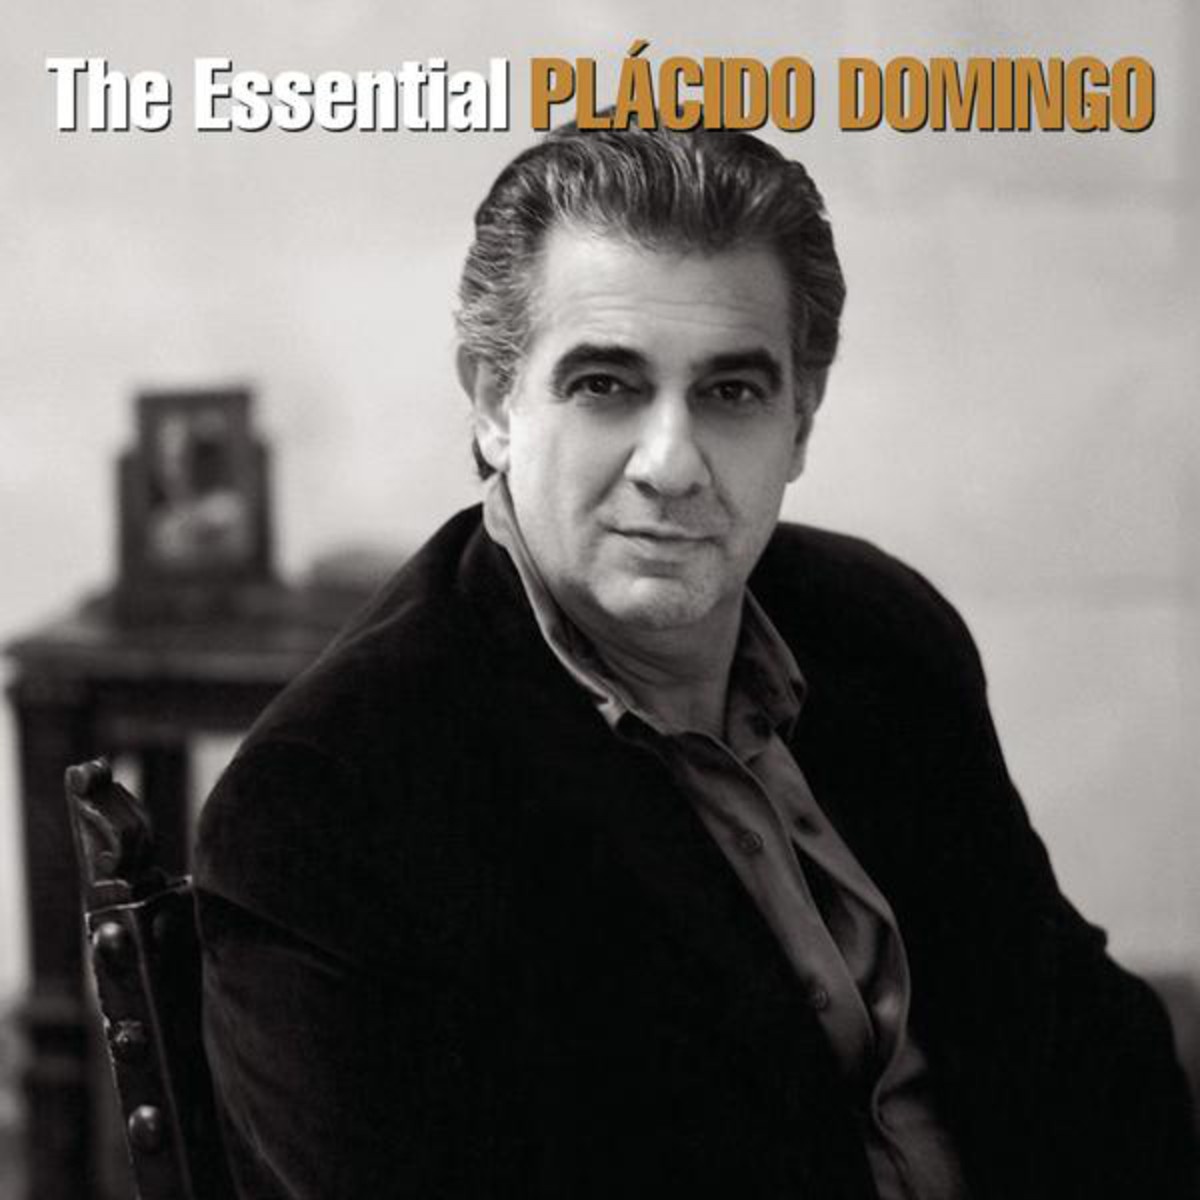 The Essential Pla cido Domingo